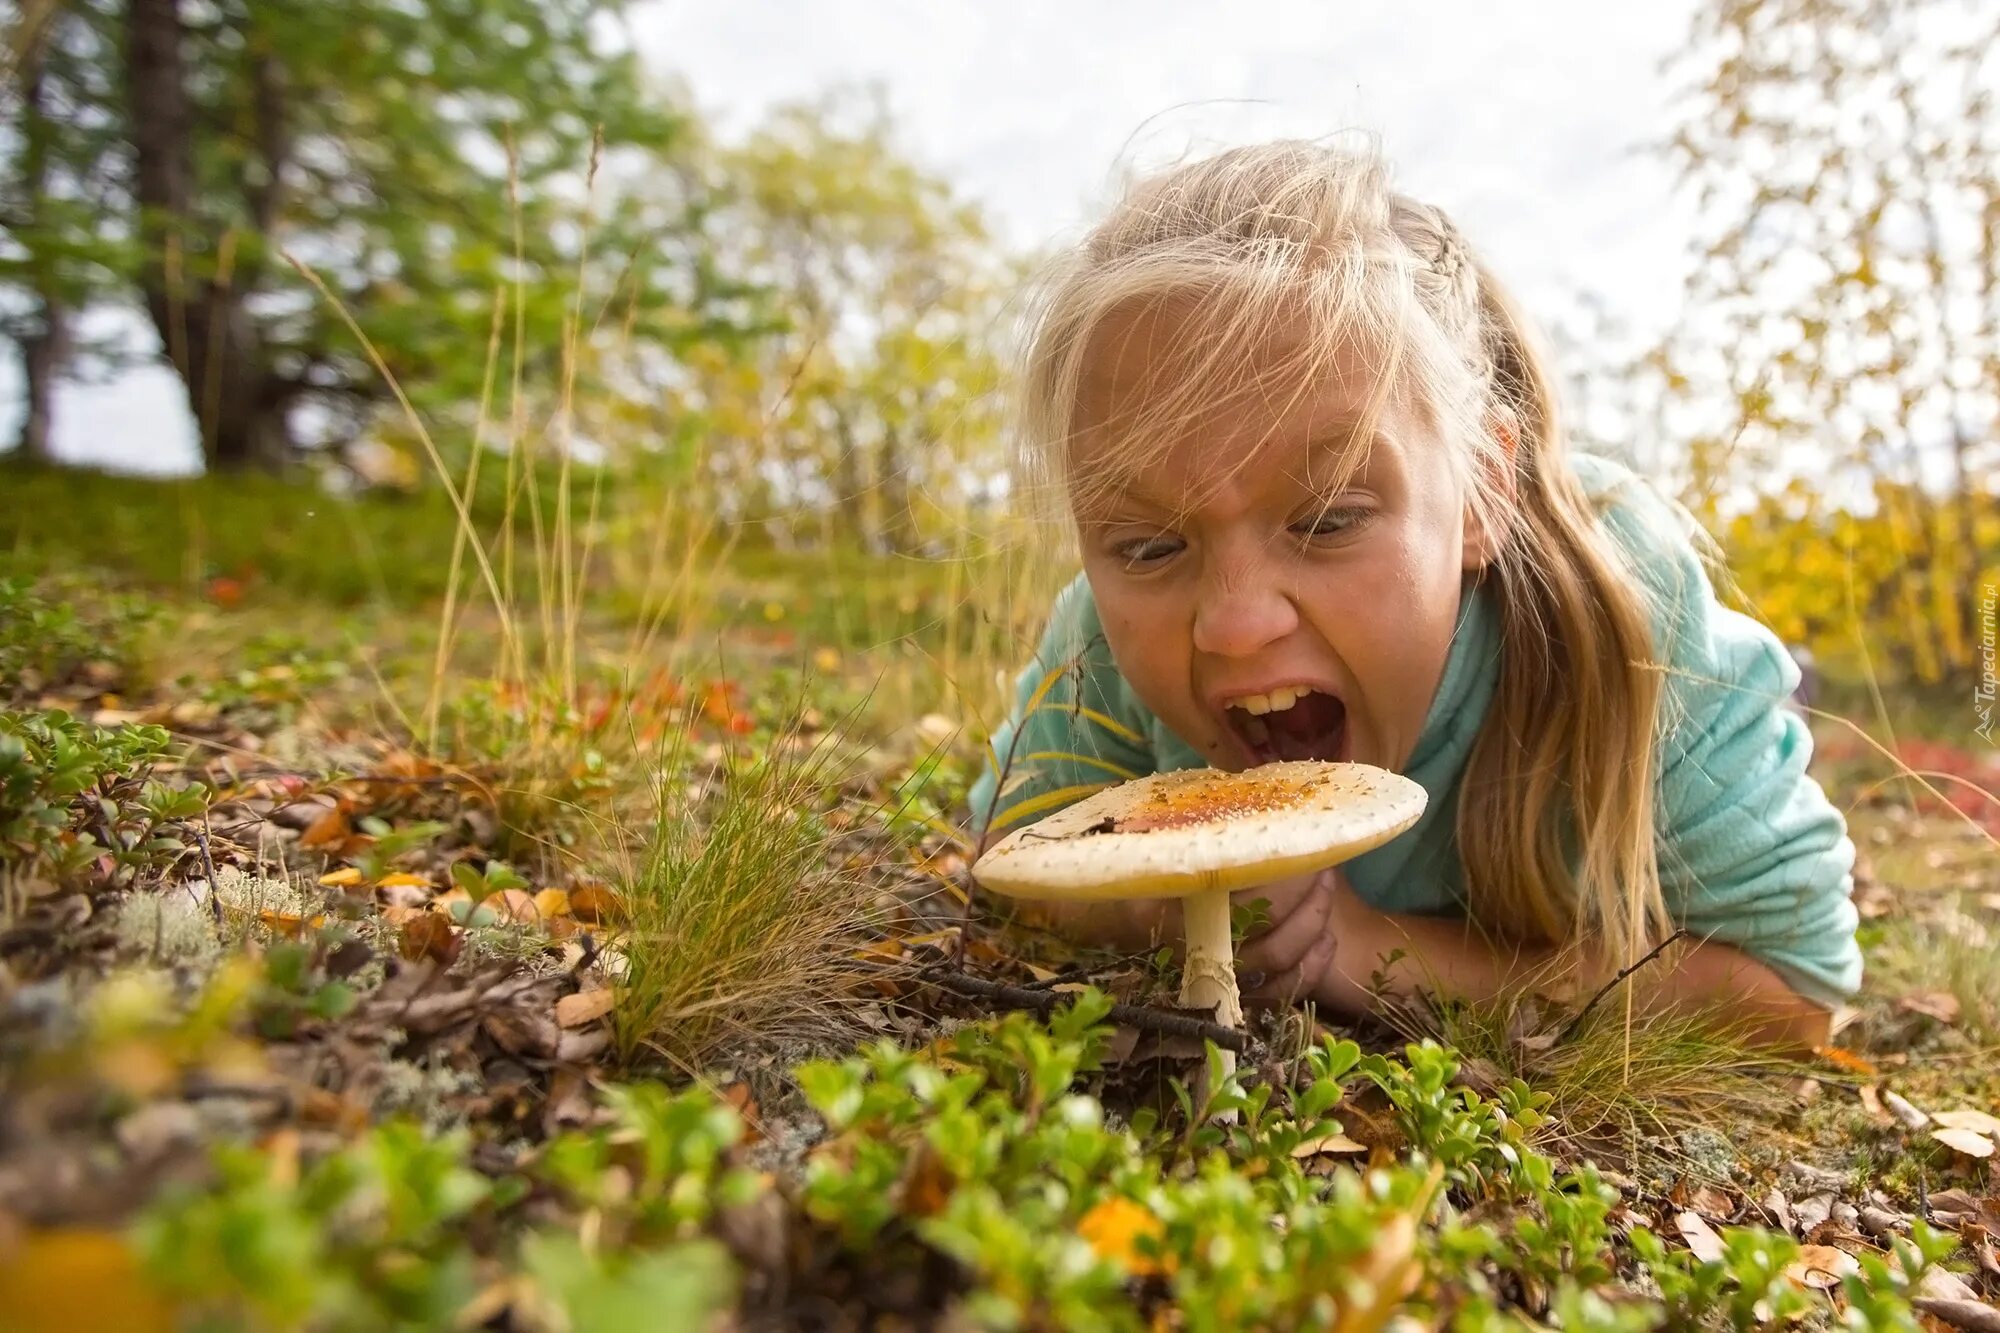 Грибы едят они глядят. Девочка гриб. Фотосессия детская в лесу с грибами. Девушка с грибами фотосессия. Девочка грибочек.